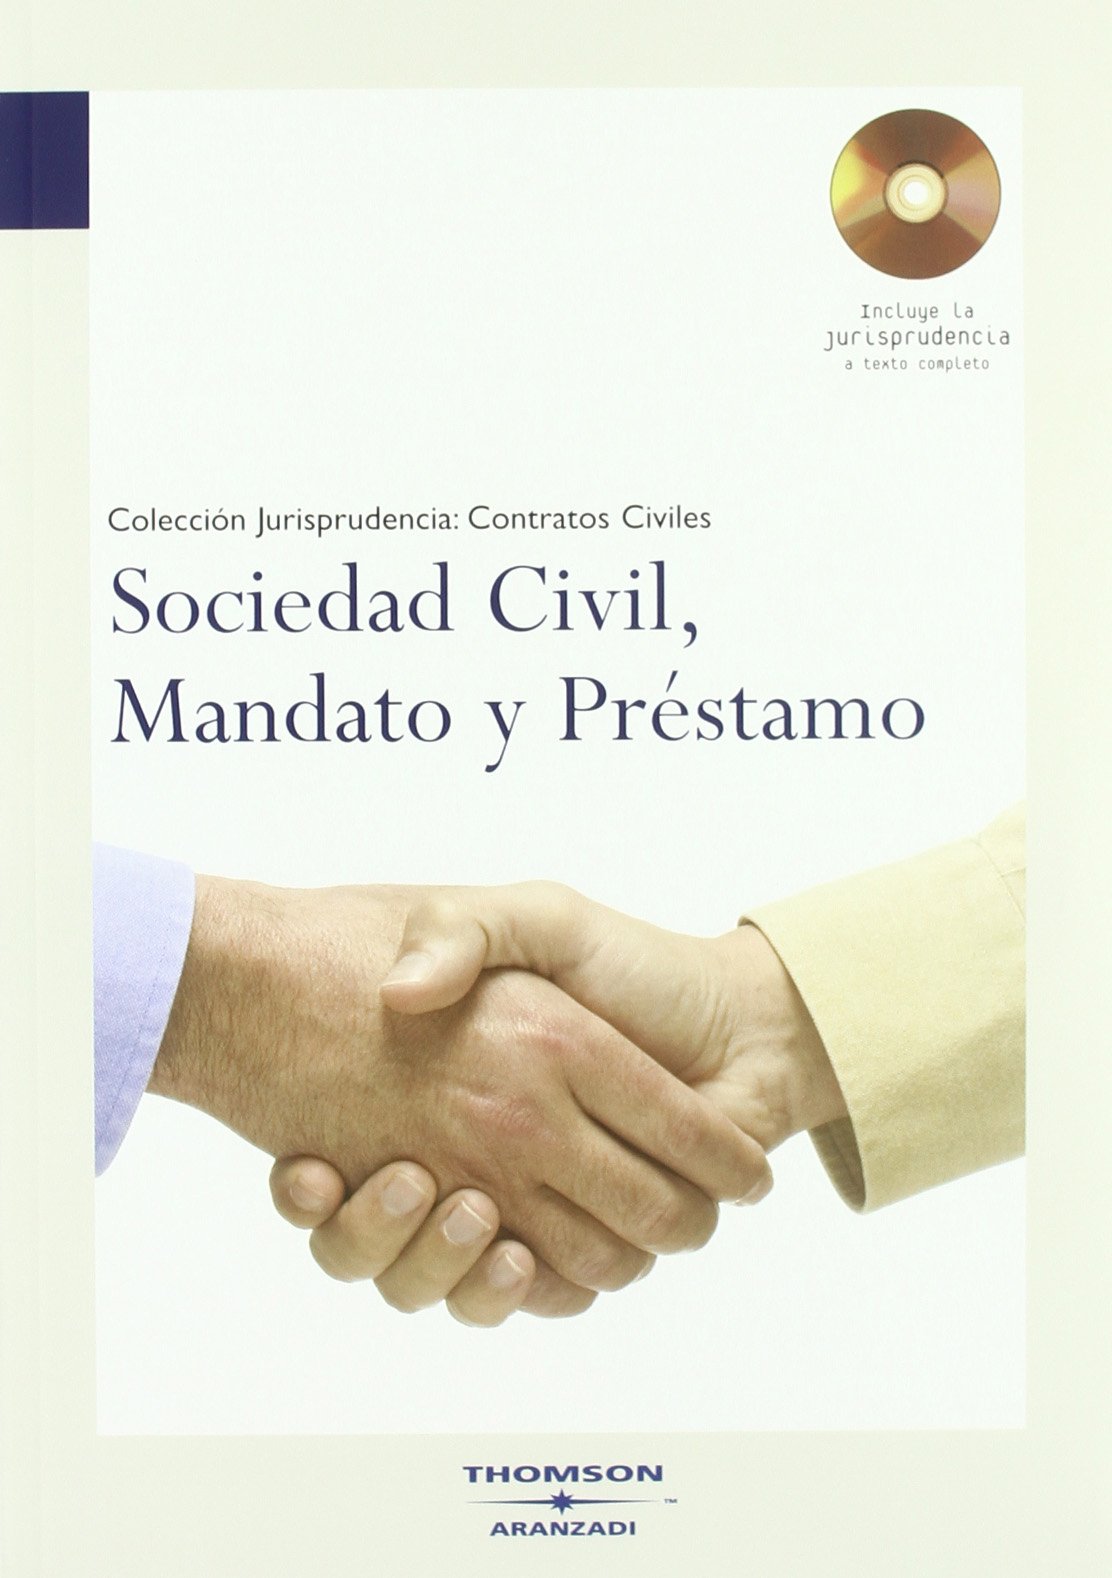 Sociedad civil, mandato y préstamo